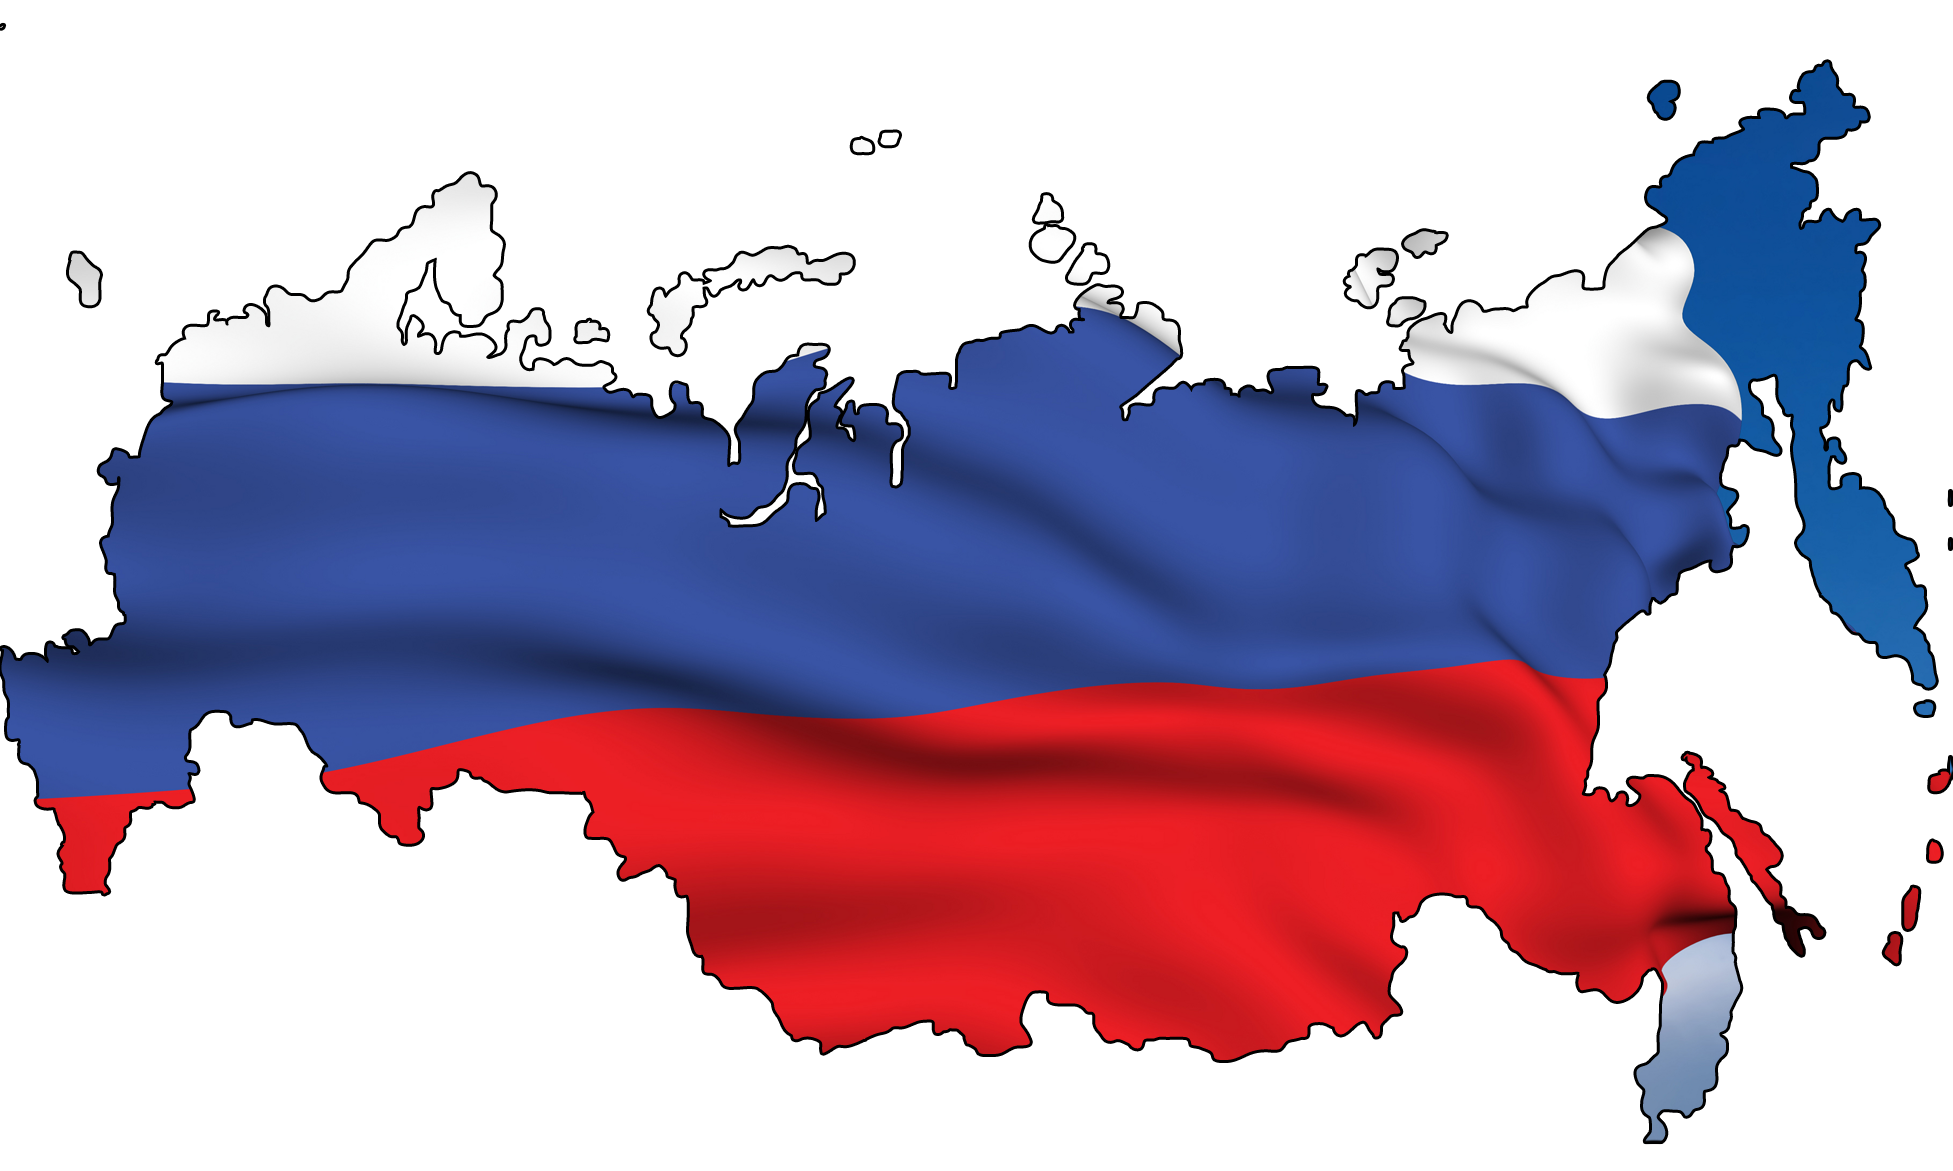 Чечня флаг карта